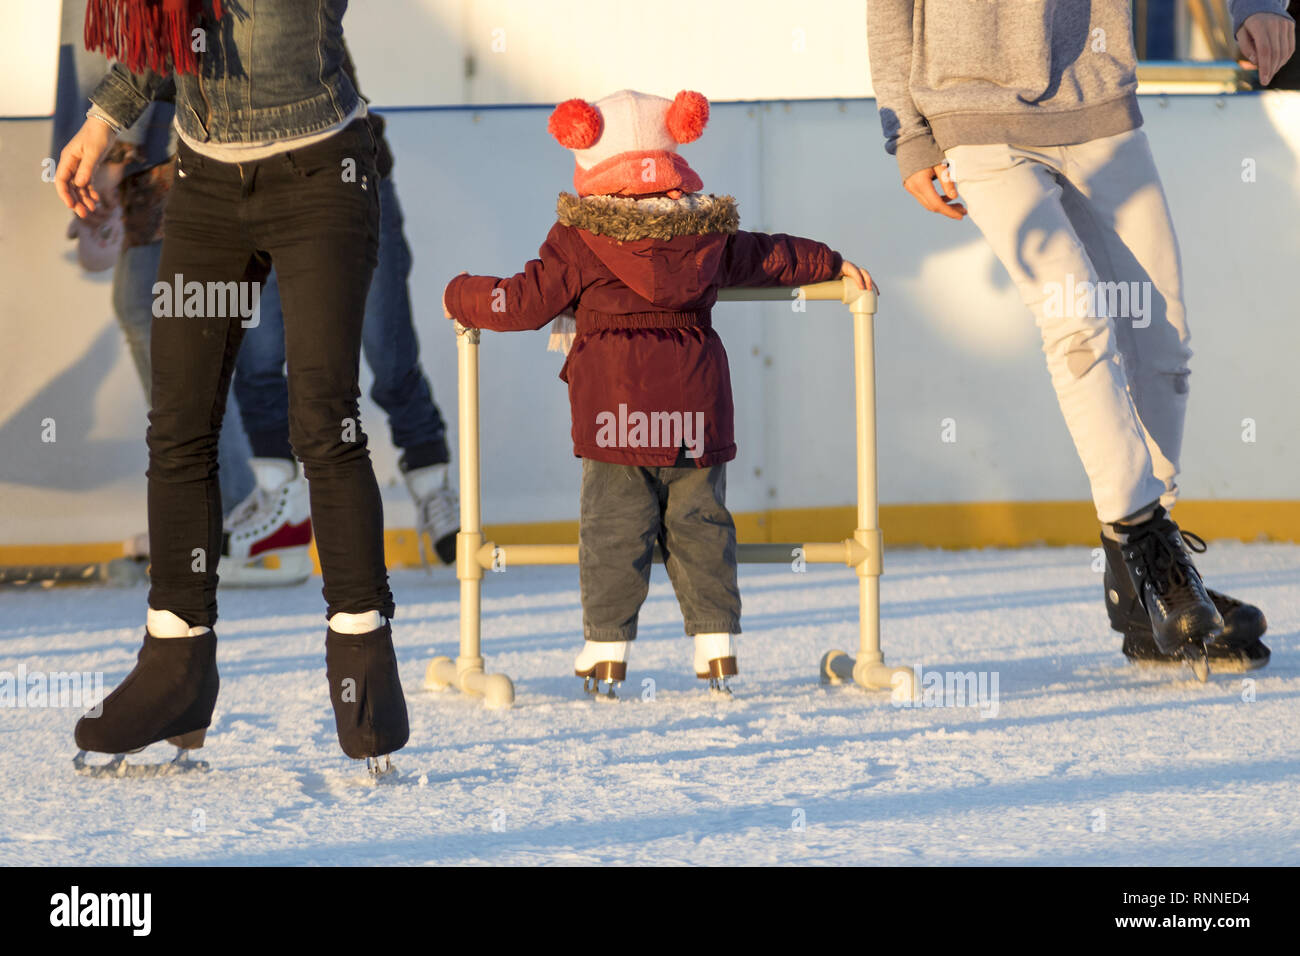 Niño pequeño aprende los primeros pasos sobre patines en la pista de patinaje sobre hielo. Una niña rodeada por adultos skaters mantiene el apoyo de estructura de skate en la pista de patinaje sobre hielo y l Foto de stock